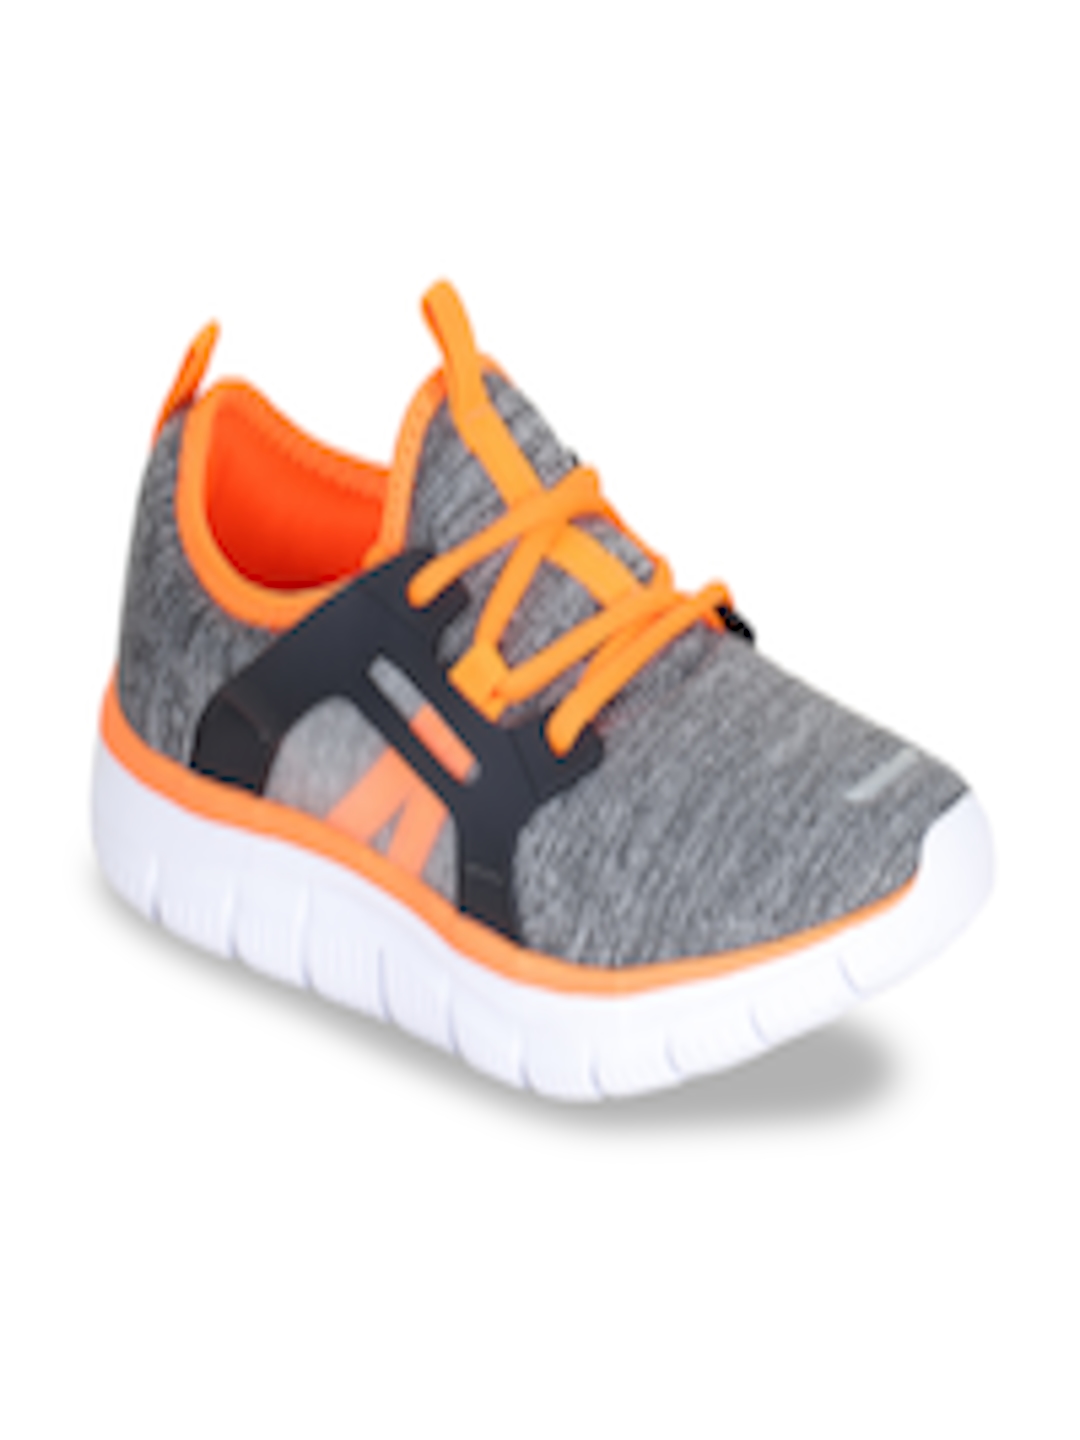 Buy REFOAM Women Grey & Orange Flyknit Sneakers Casual